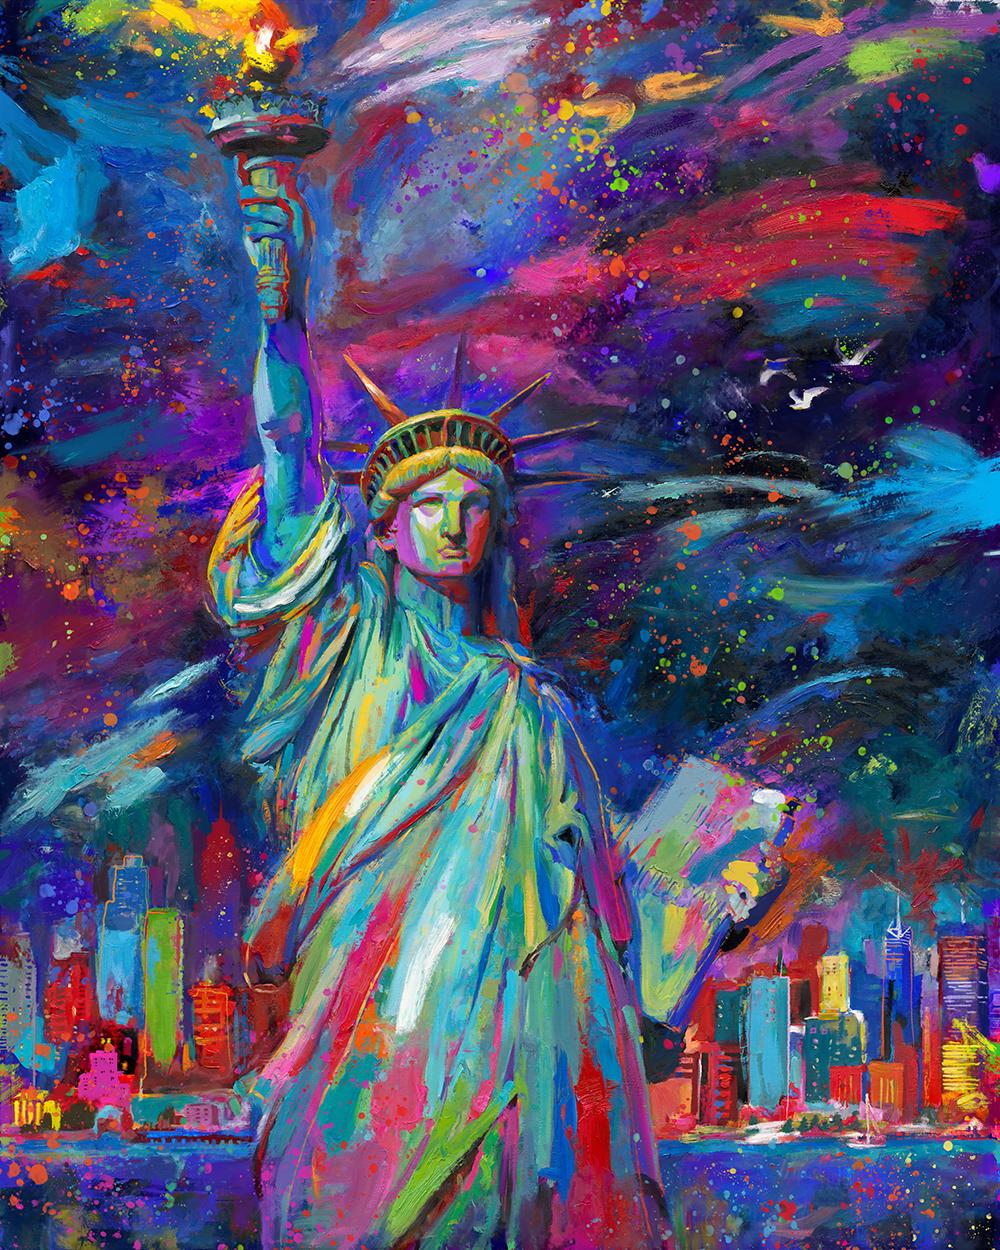 Ce magnifique symbole de la liberté et de la démocratie se dresse au-dessus de Liberty Island, dans le port de New York. Sa flamme de vérité perce le ciel et illumine l'esprit de tous ceux qui contemplent cette icône de la liberté. La lumière